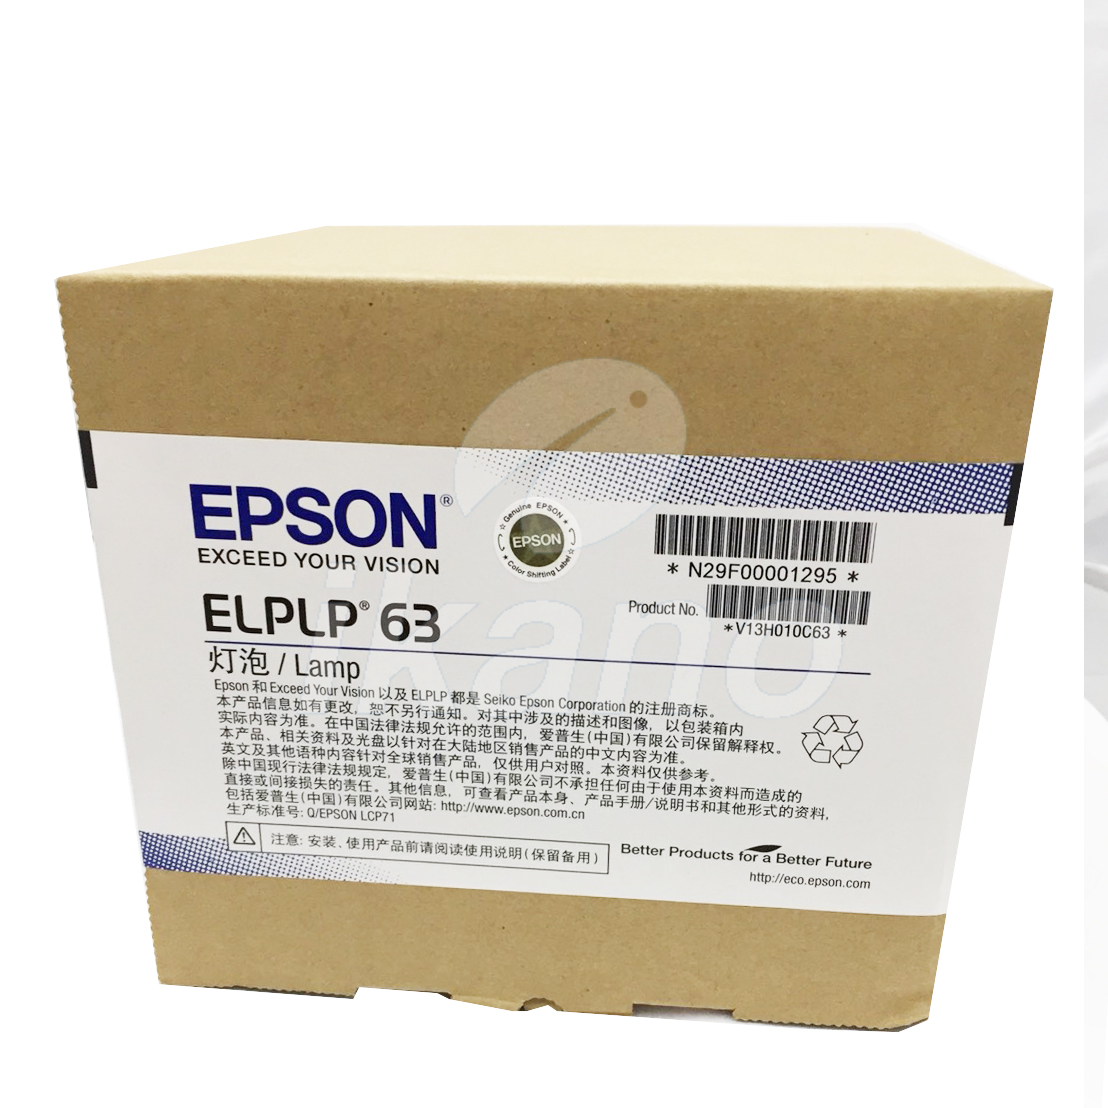 EPSON-原廠原封包廠投影機燈泡ELPLP63 / 適用機型EB-G5900